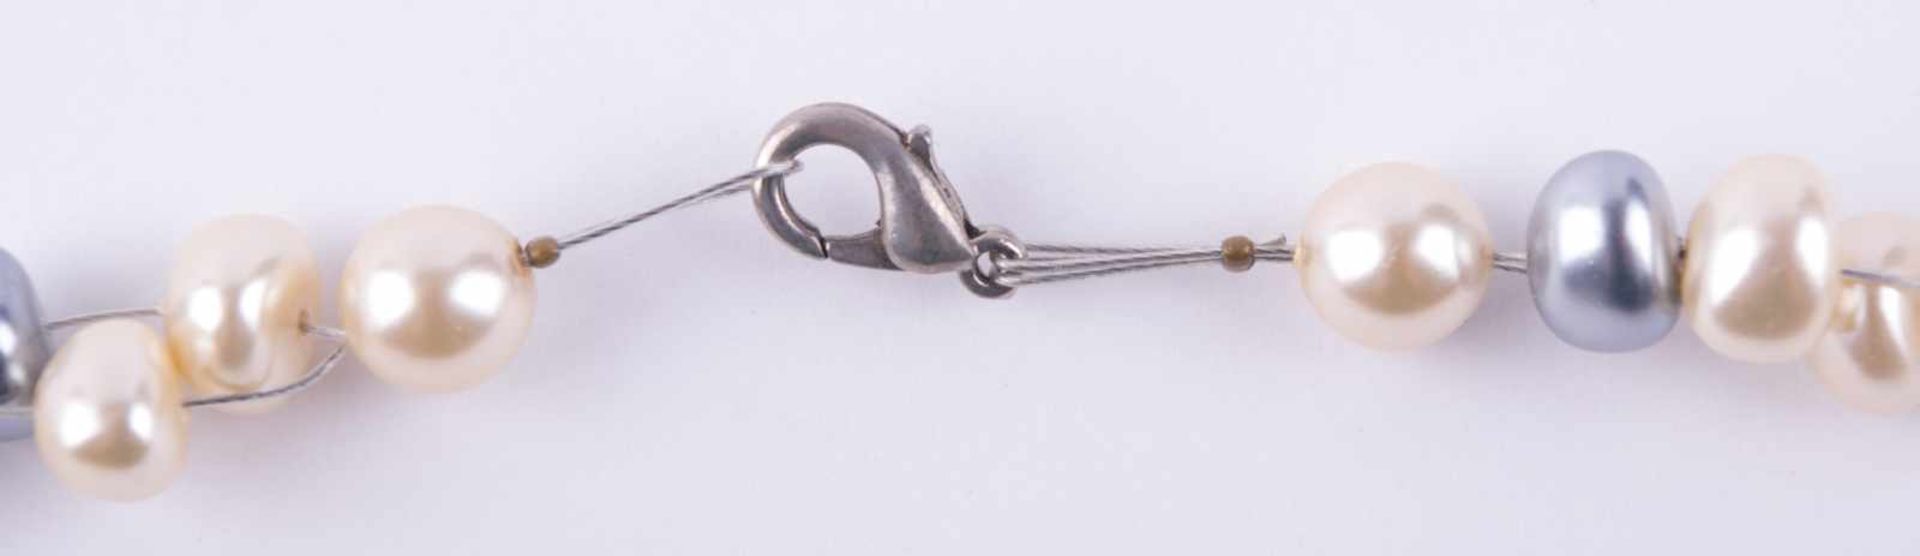 Designer-Perlenkette Flussperlen, L: 44 cm, Designer pearl necklace River paerls, lenght: 44 cm, - Image 3 of 3